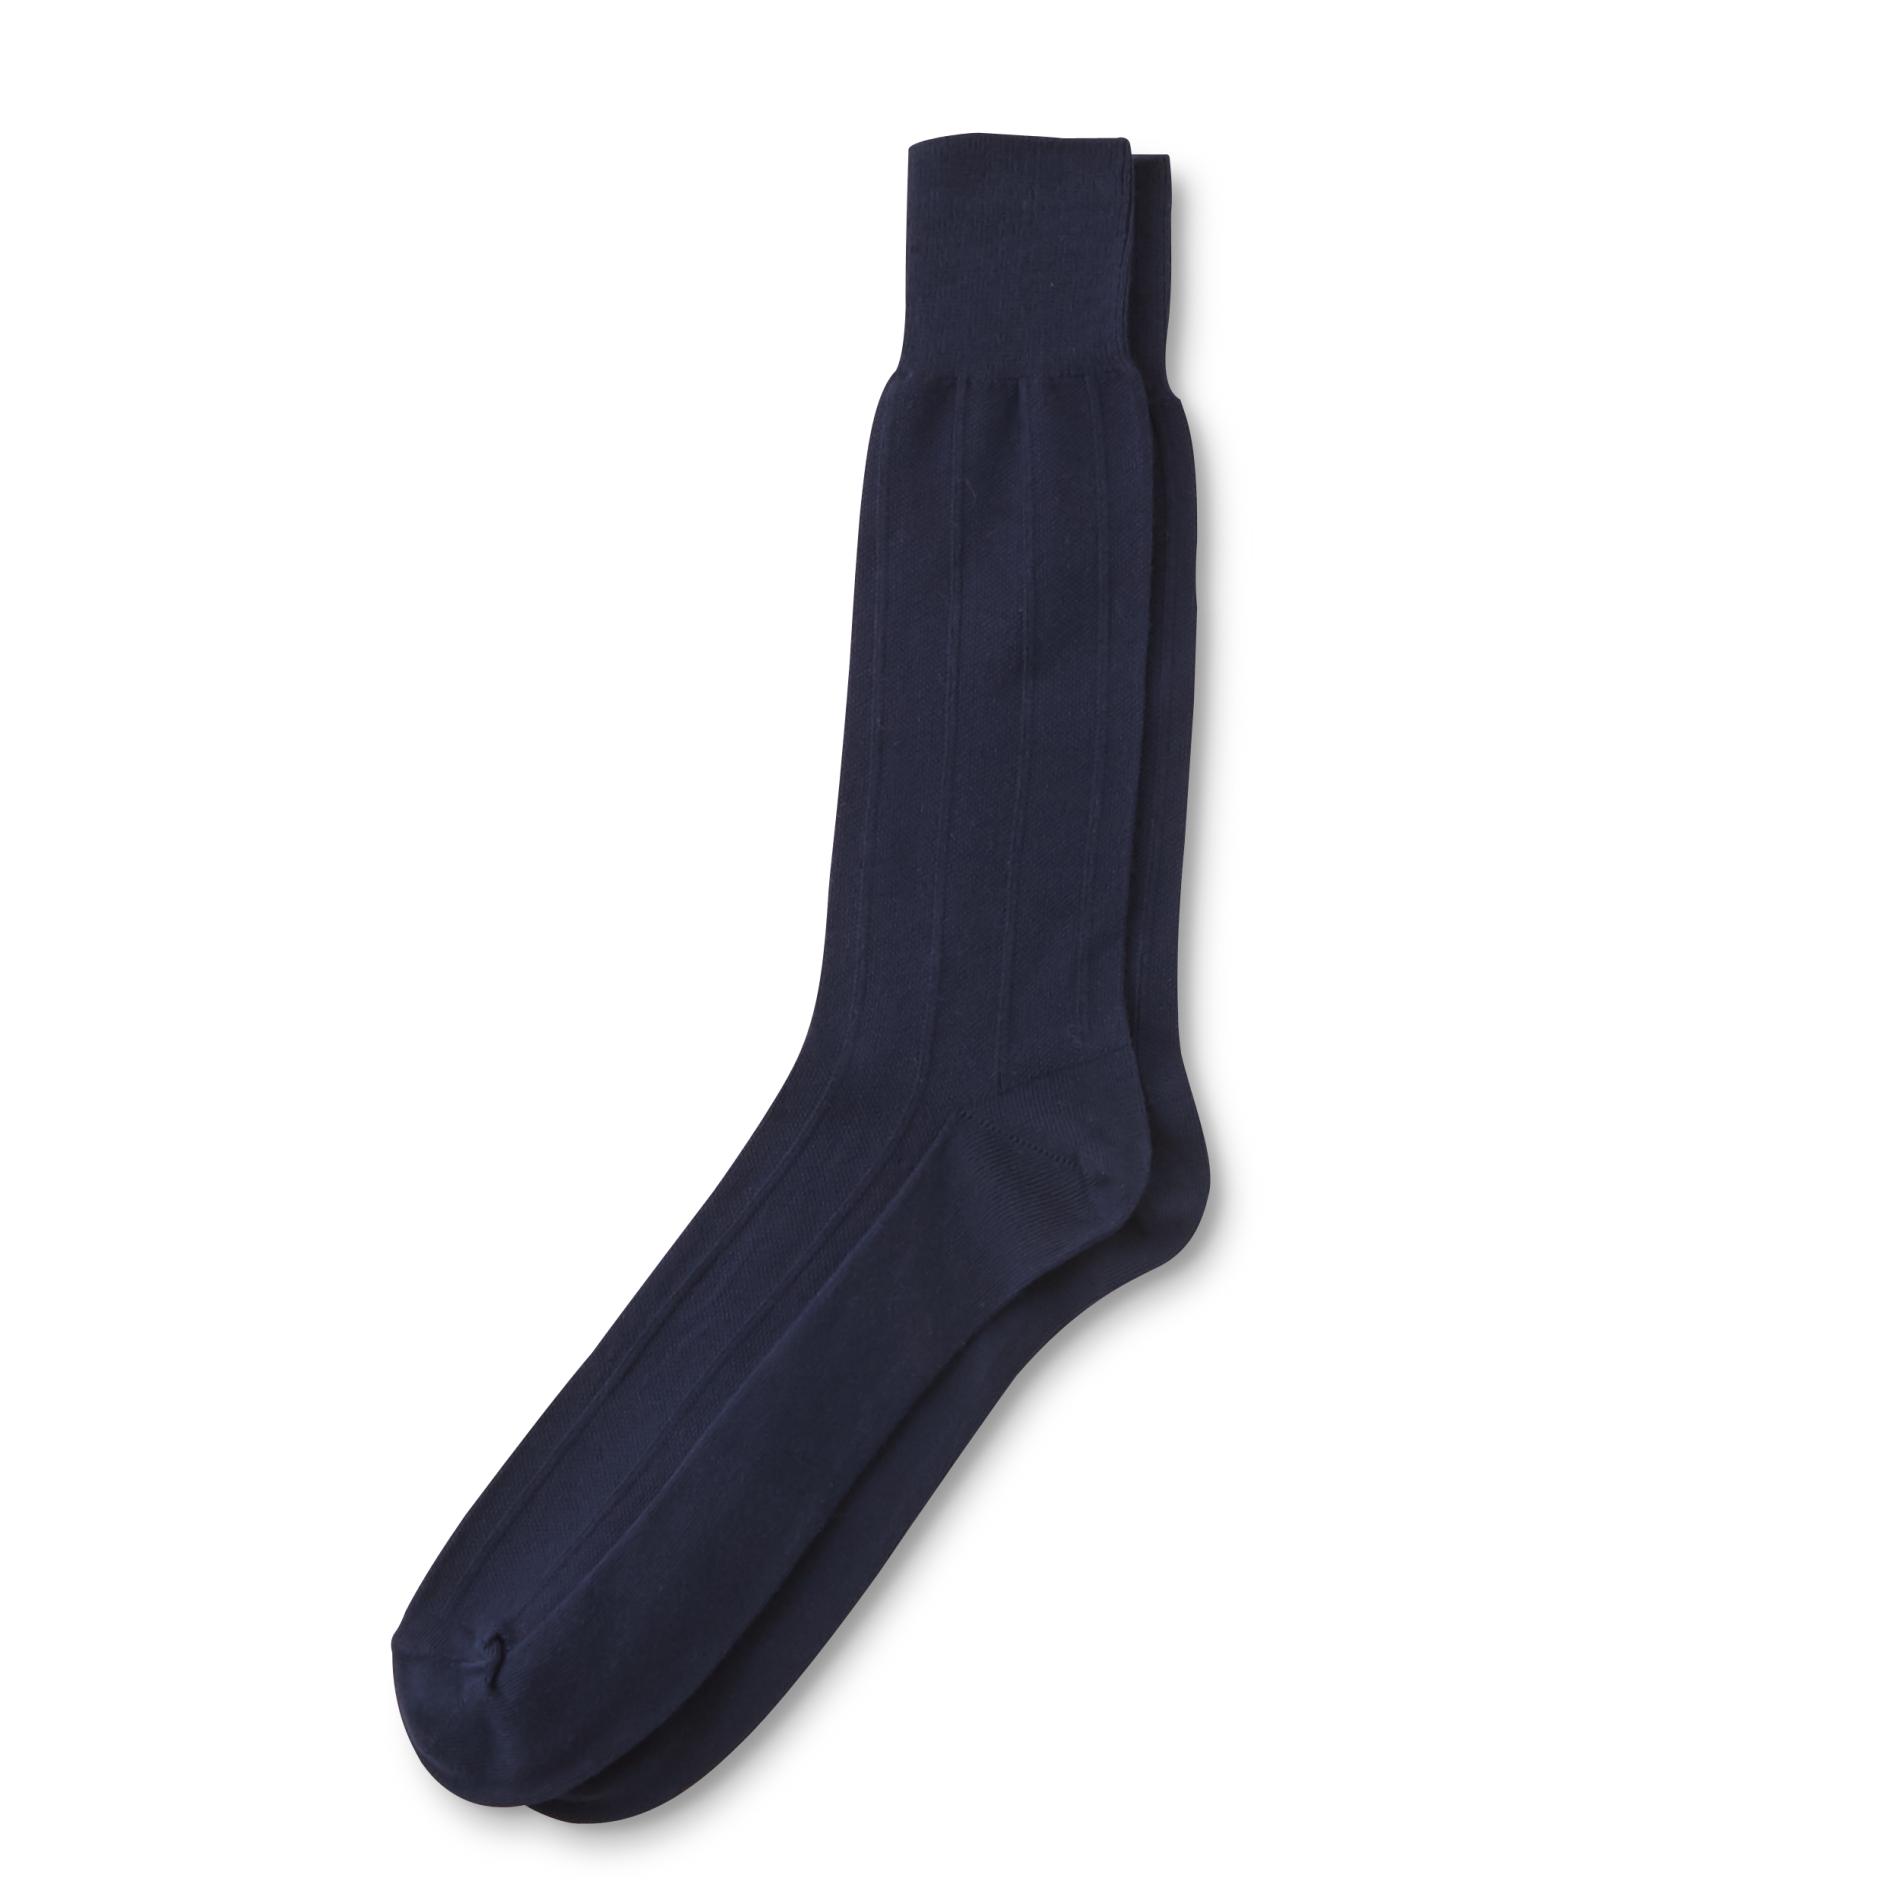 Silvertoe Men's Dress Socks